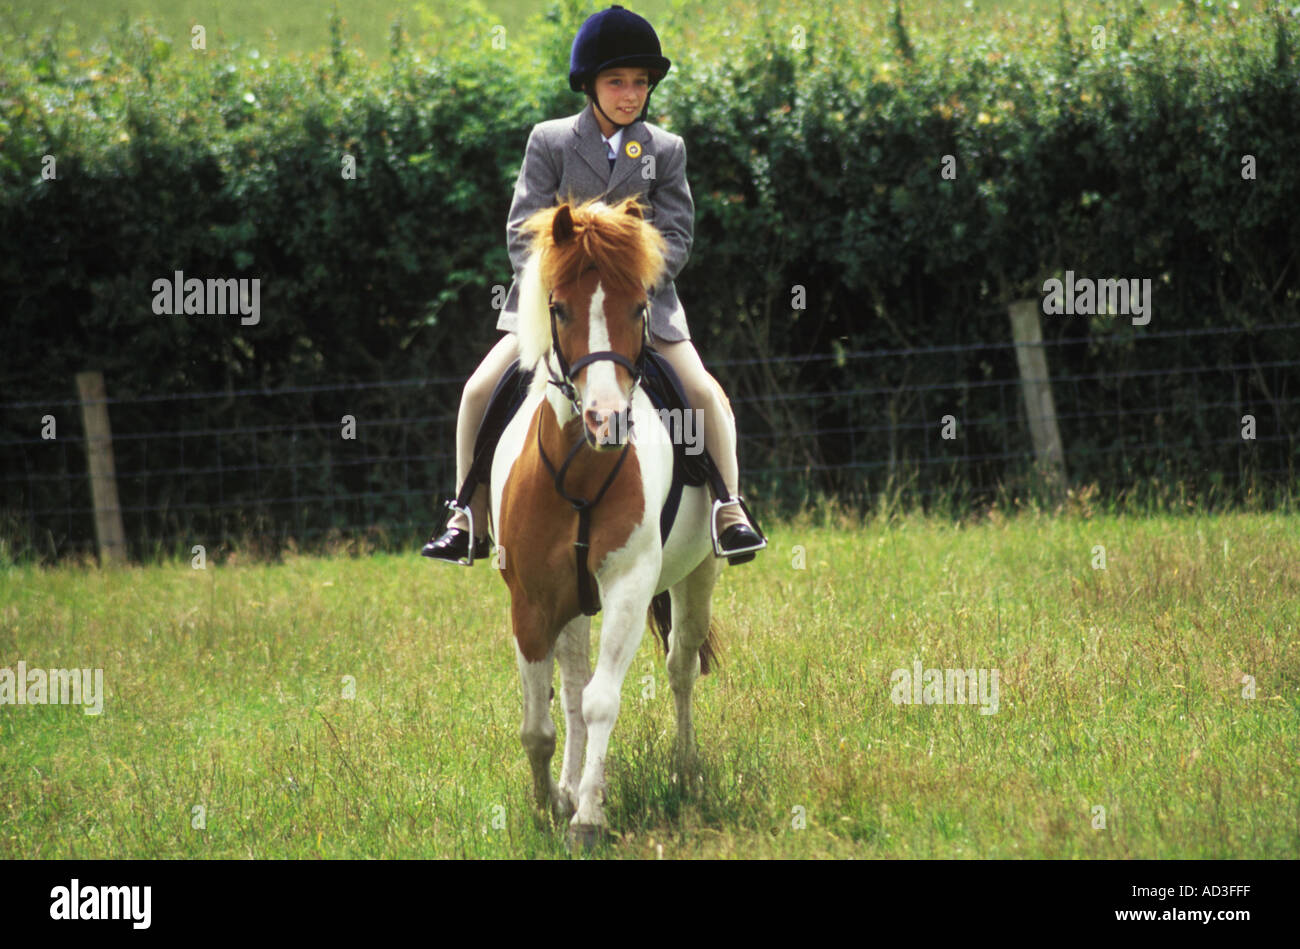 Pony Club Rider UK 28540SB Stock Photo